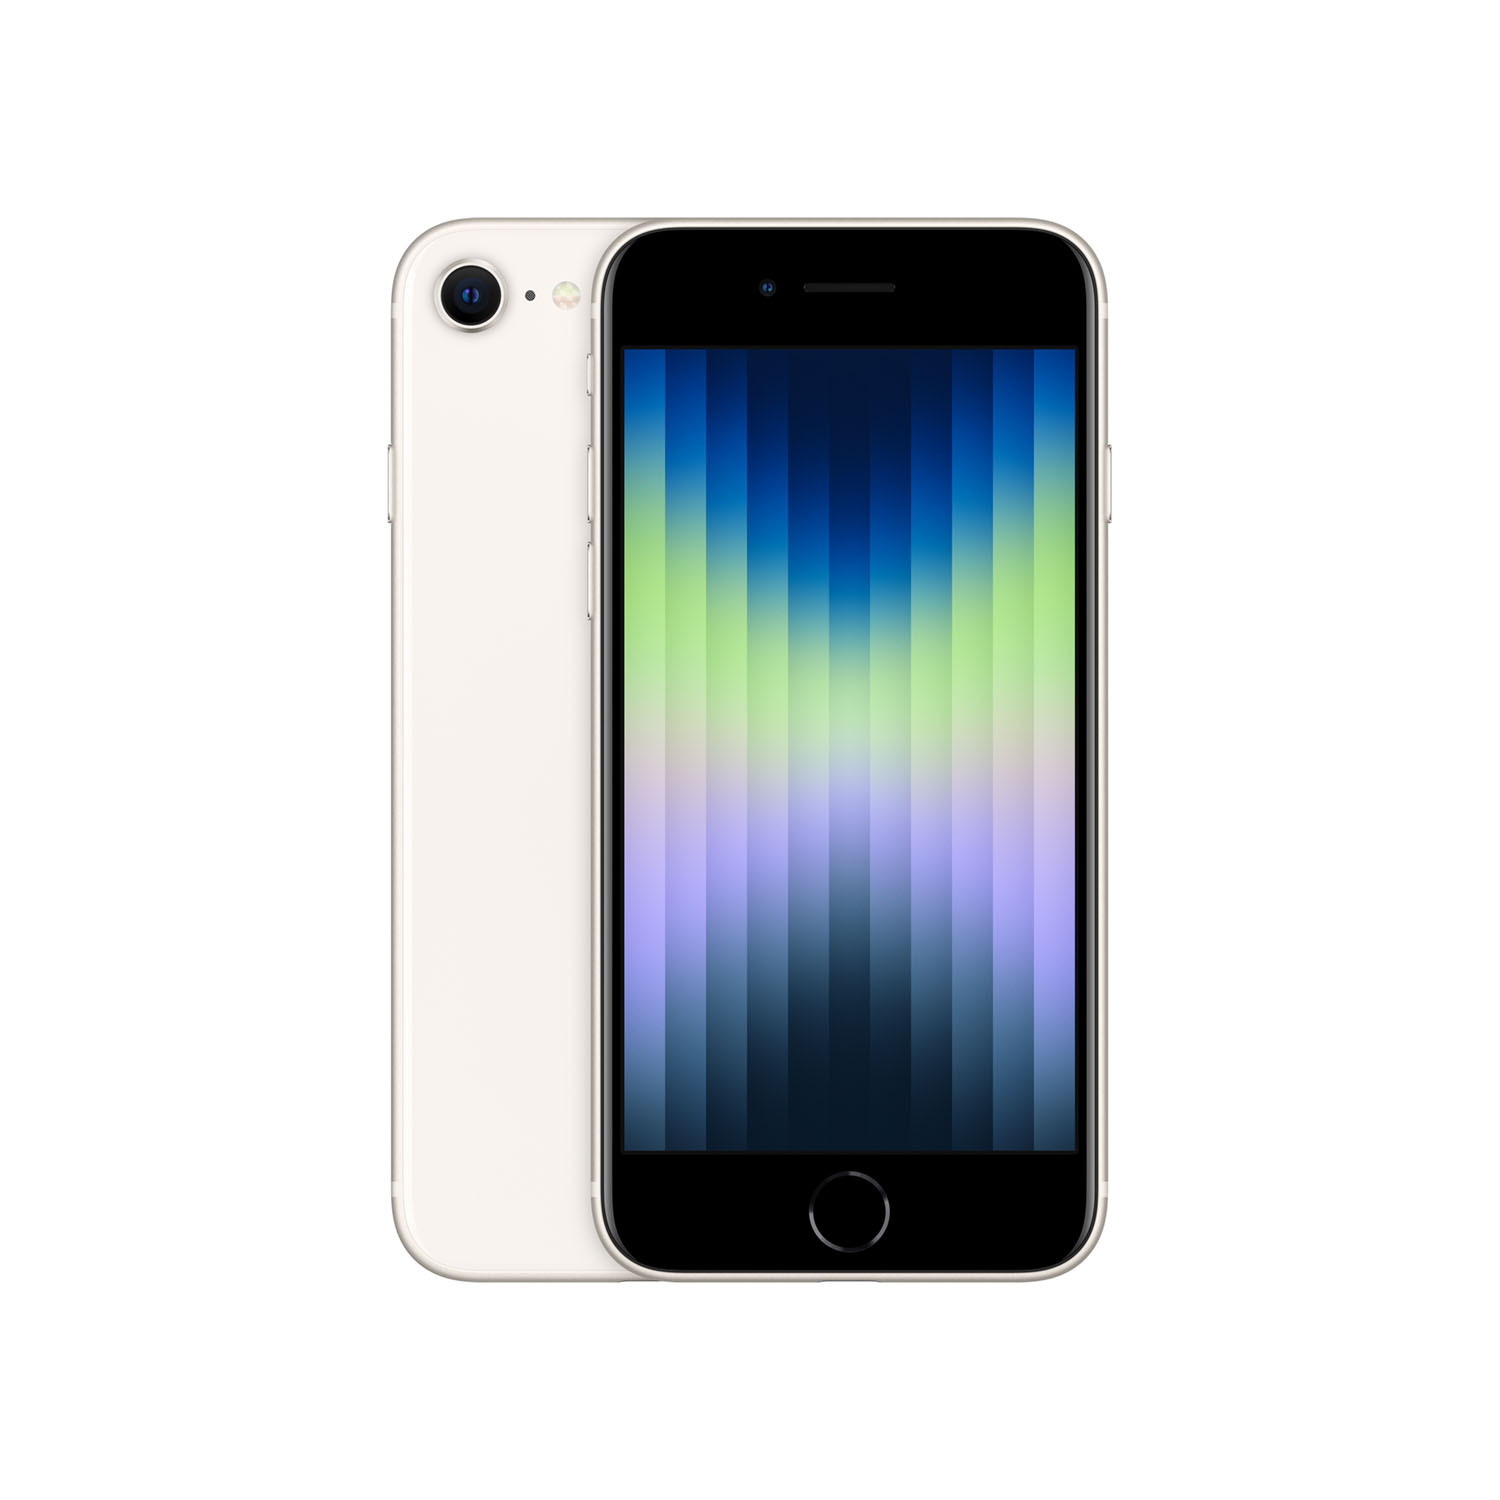 Apple iPhone SE 256GB - Polarstern